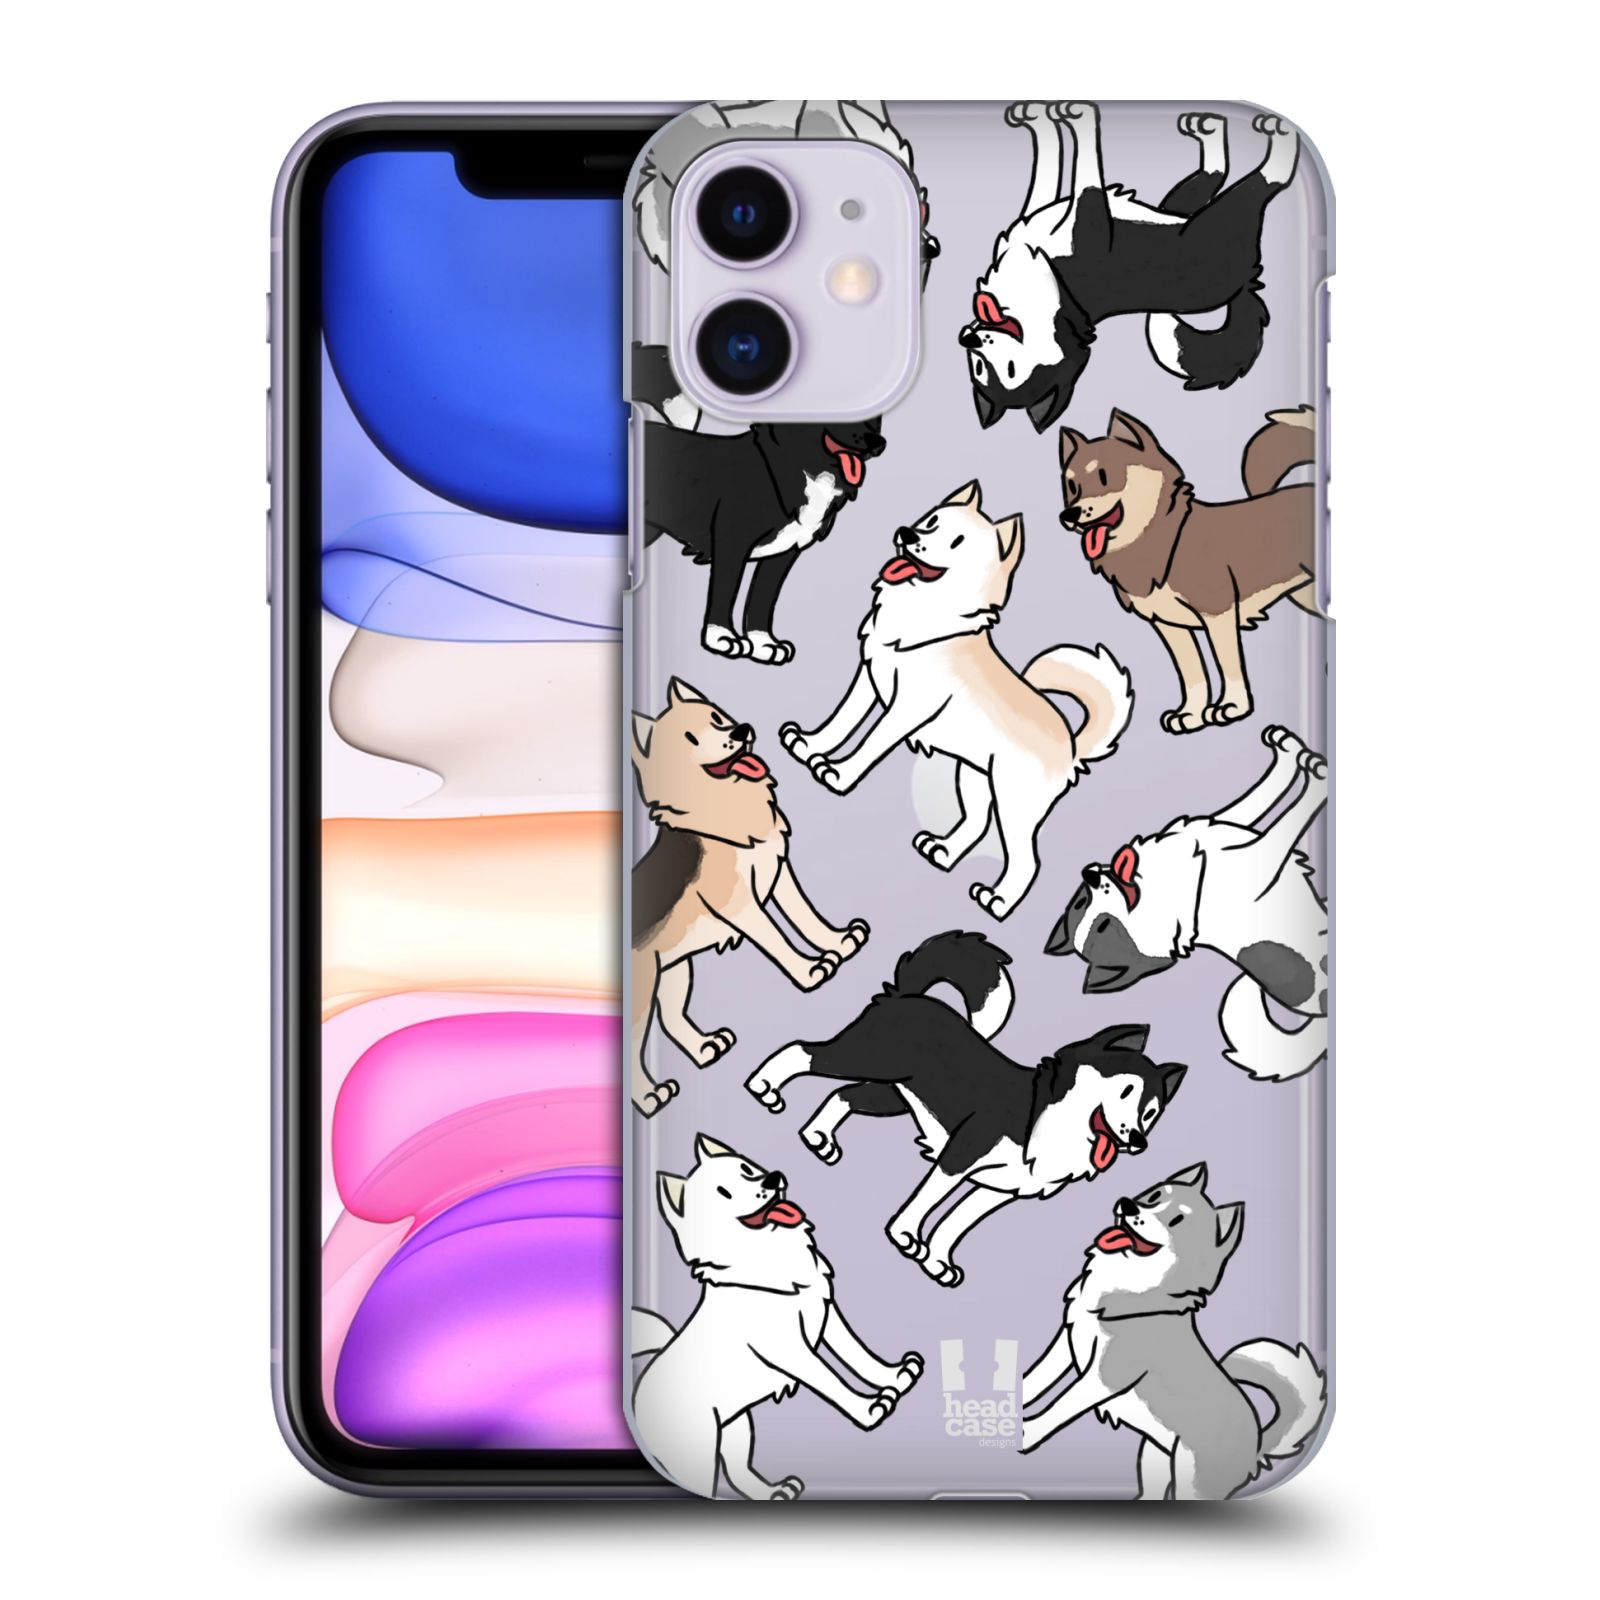 Pouzdro na mobil Apple Iphone 11 - HEAD CASE - pejsek Sibiřský husky